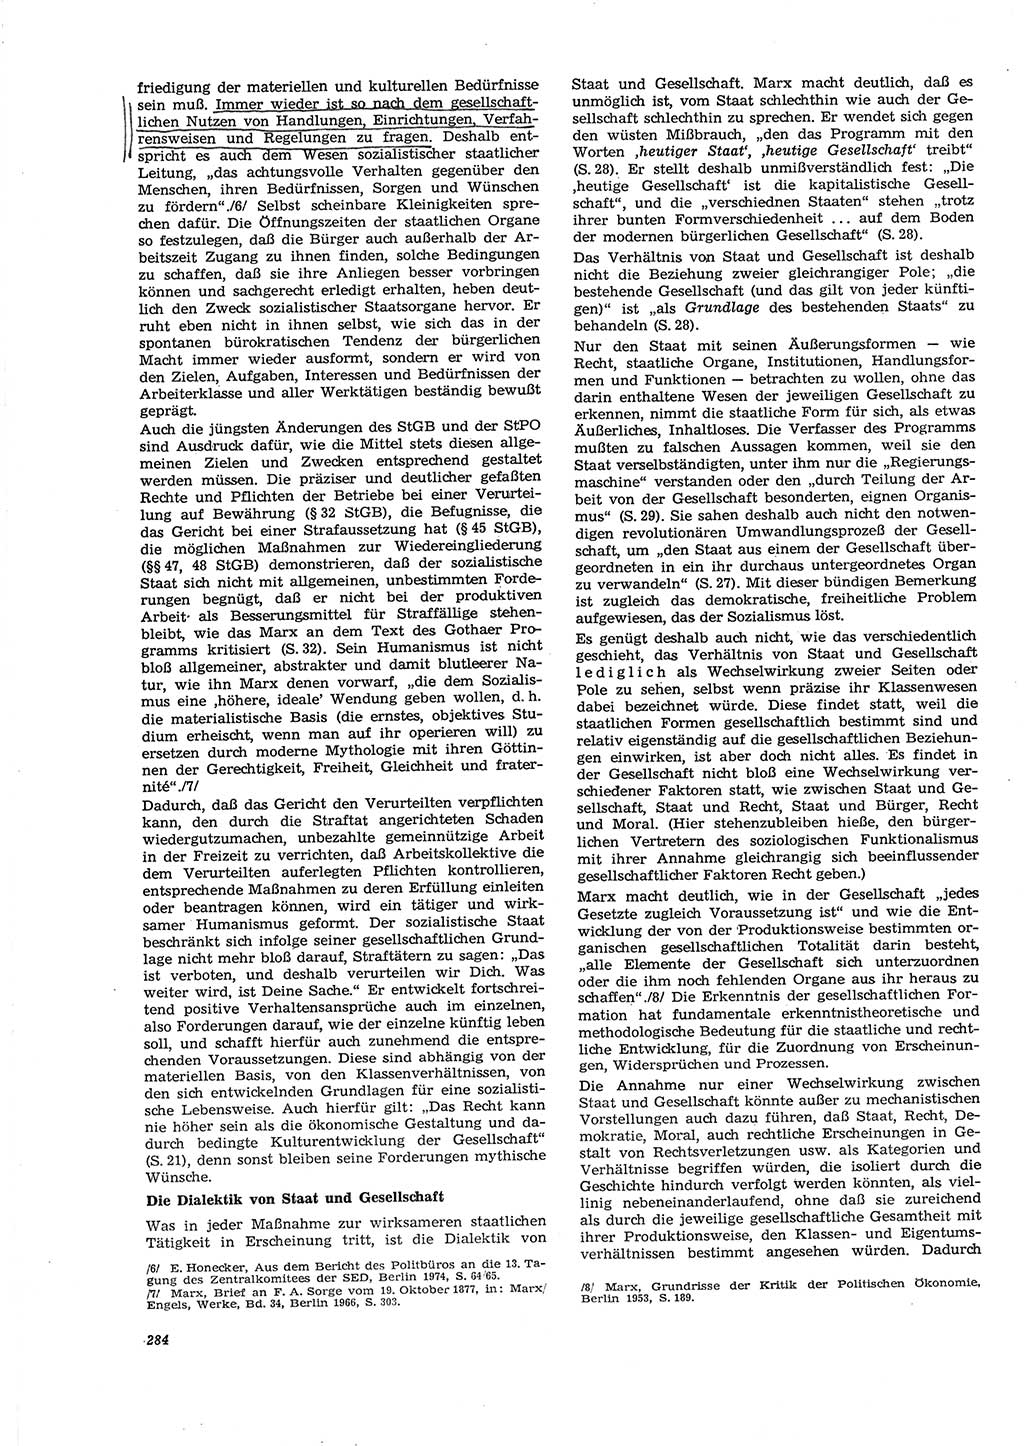 Neue Justiz (NJ), Zeitschrift für Recht und Rechtswissenschaft [Deutsche Demokratische Republik (DDR)], 29. Jahrgang 1975, Seite 284 (NJ DDR 1975, S. 284)